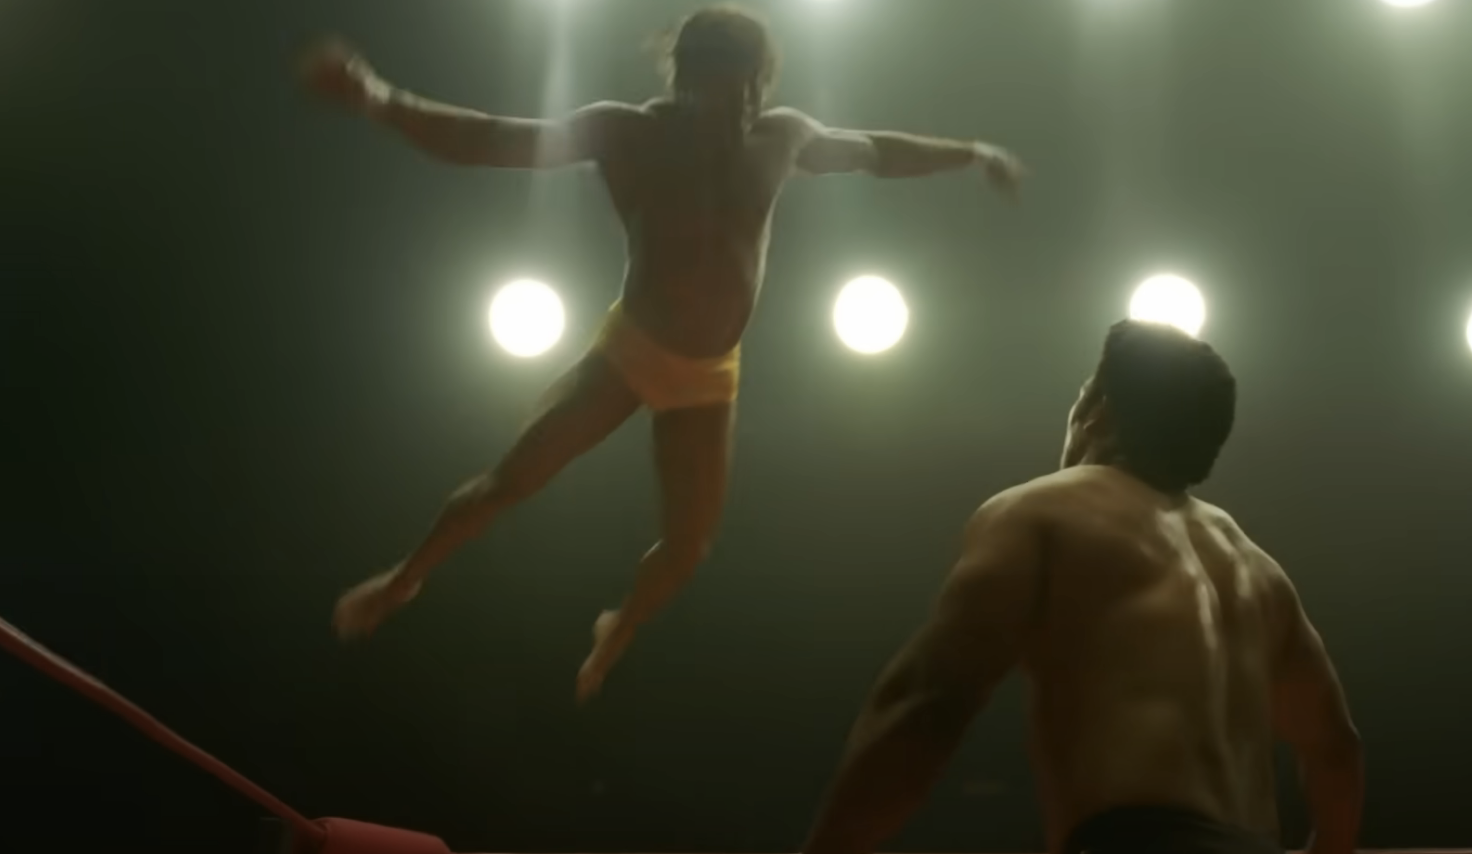 Zac in a wrestling scene